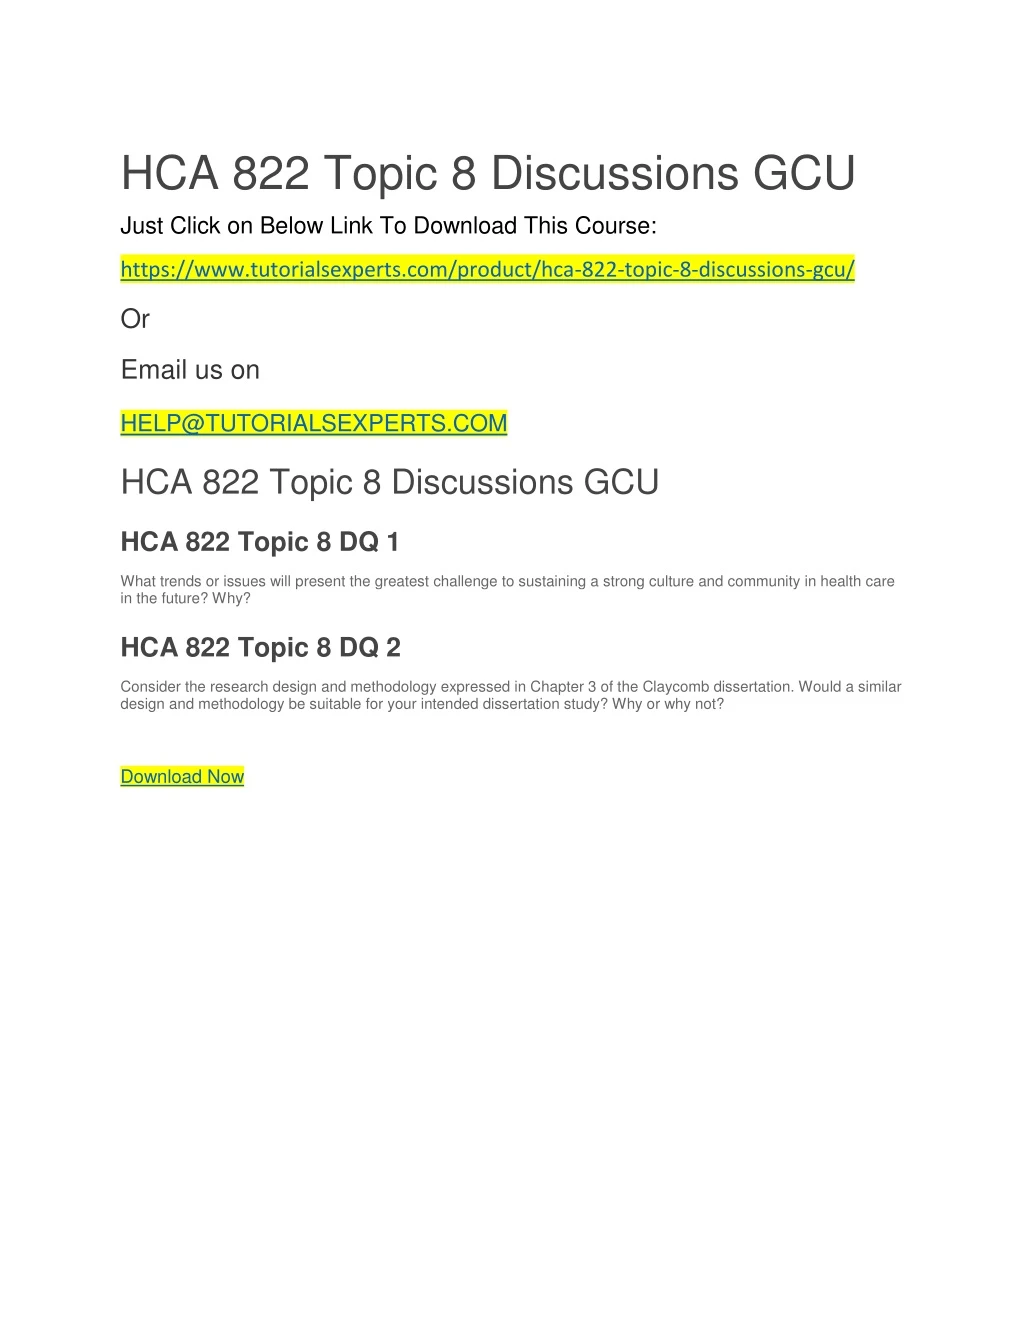 hca 822 topic 8 discussions gcu just click